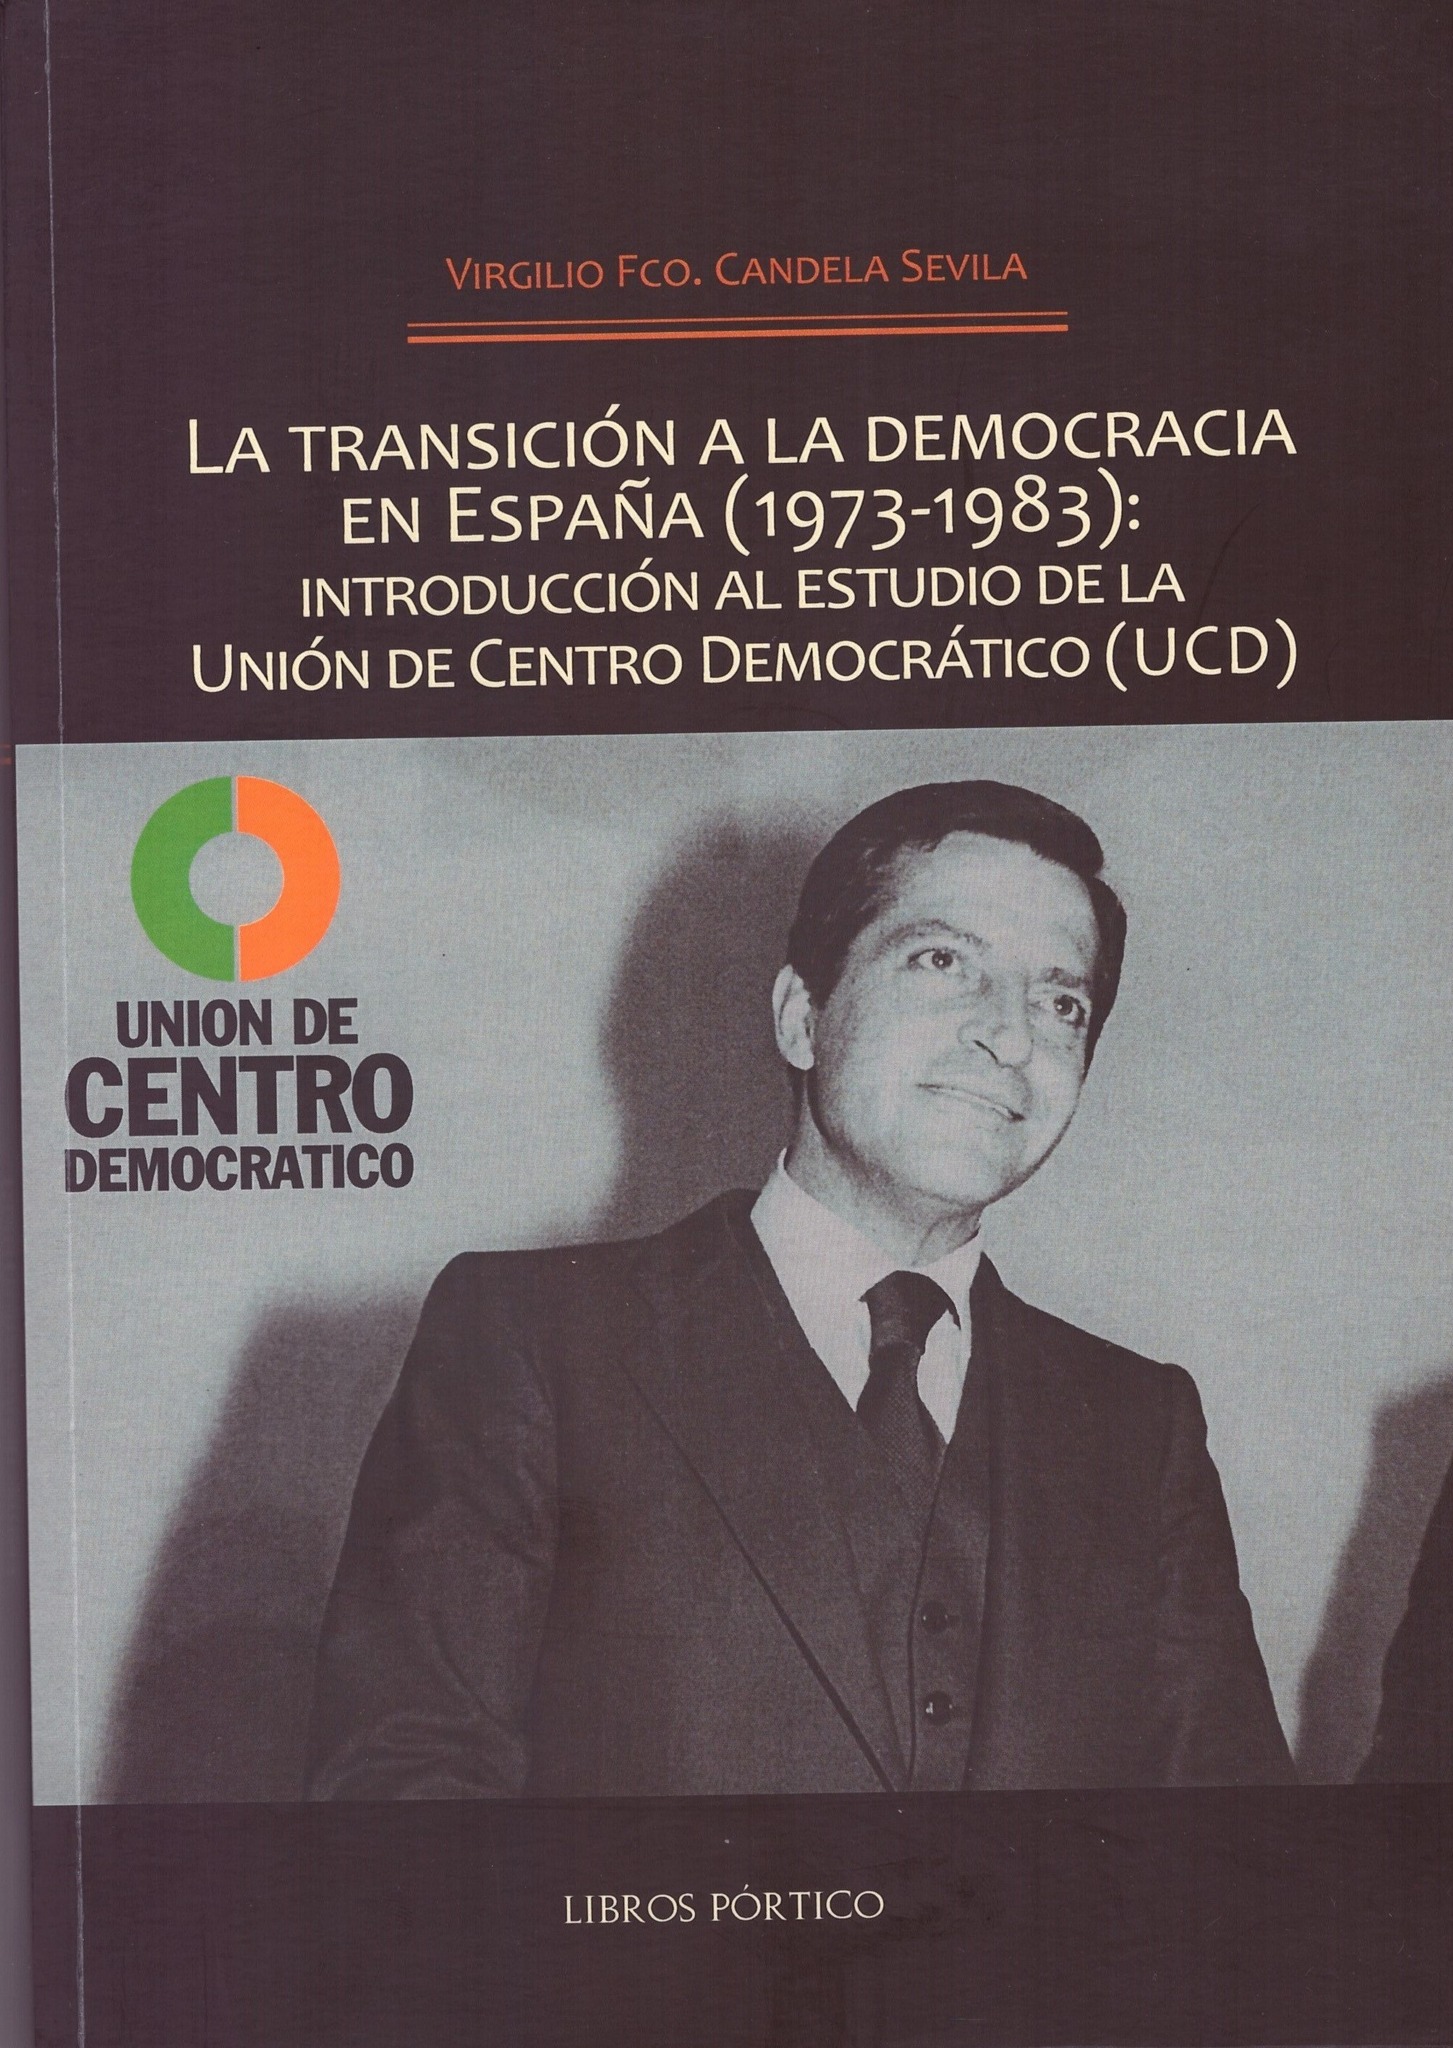 Imagen de portada del libro La transición a la democracia en España (1973-1983)